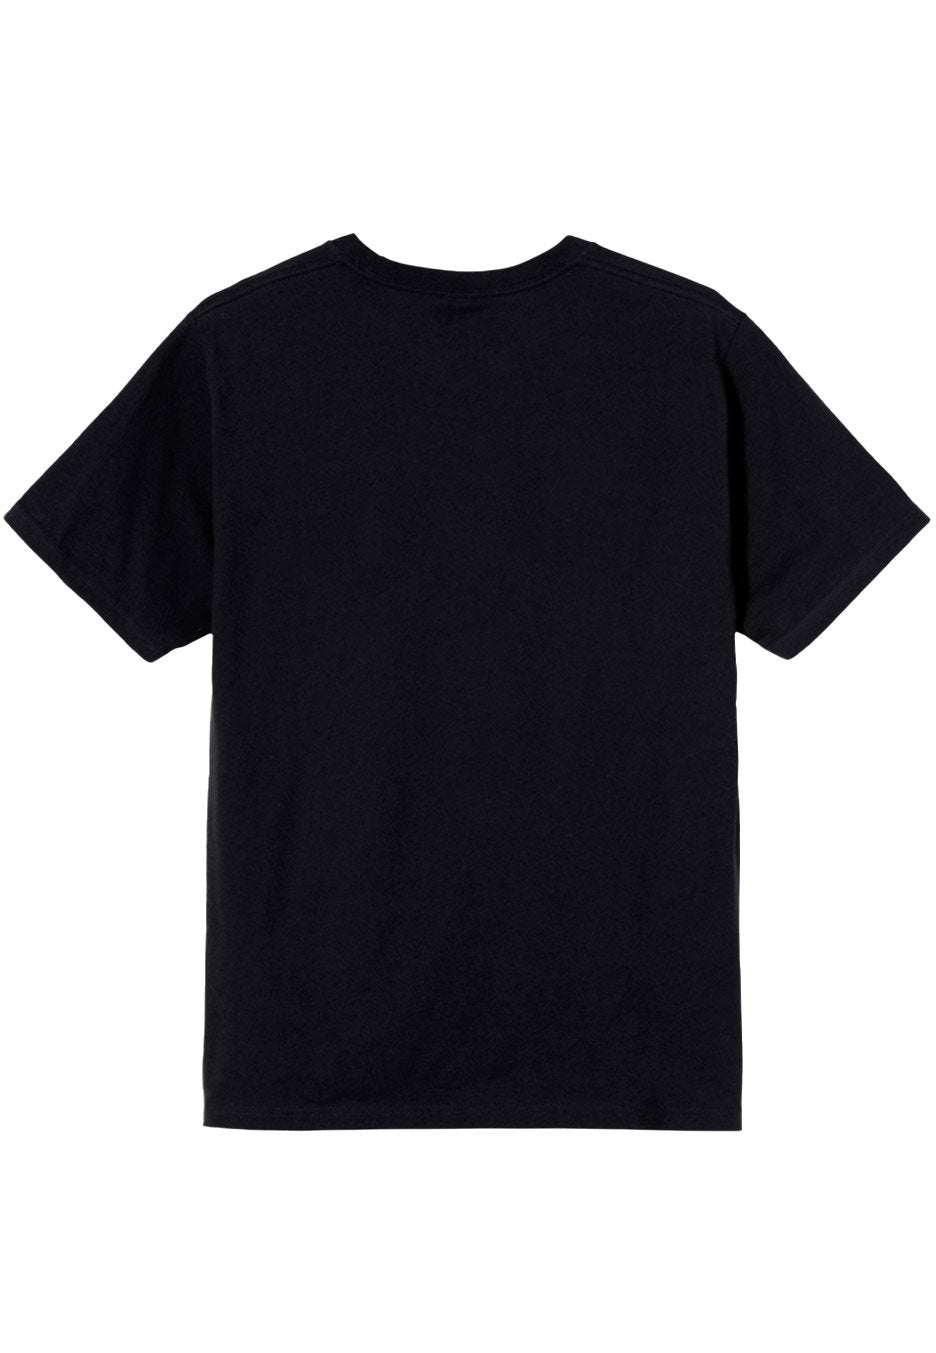 In Flames - Logo - T-Shirt